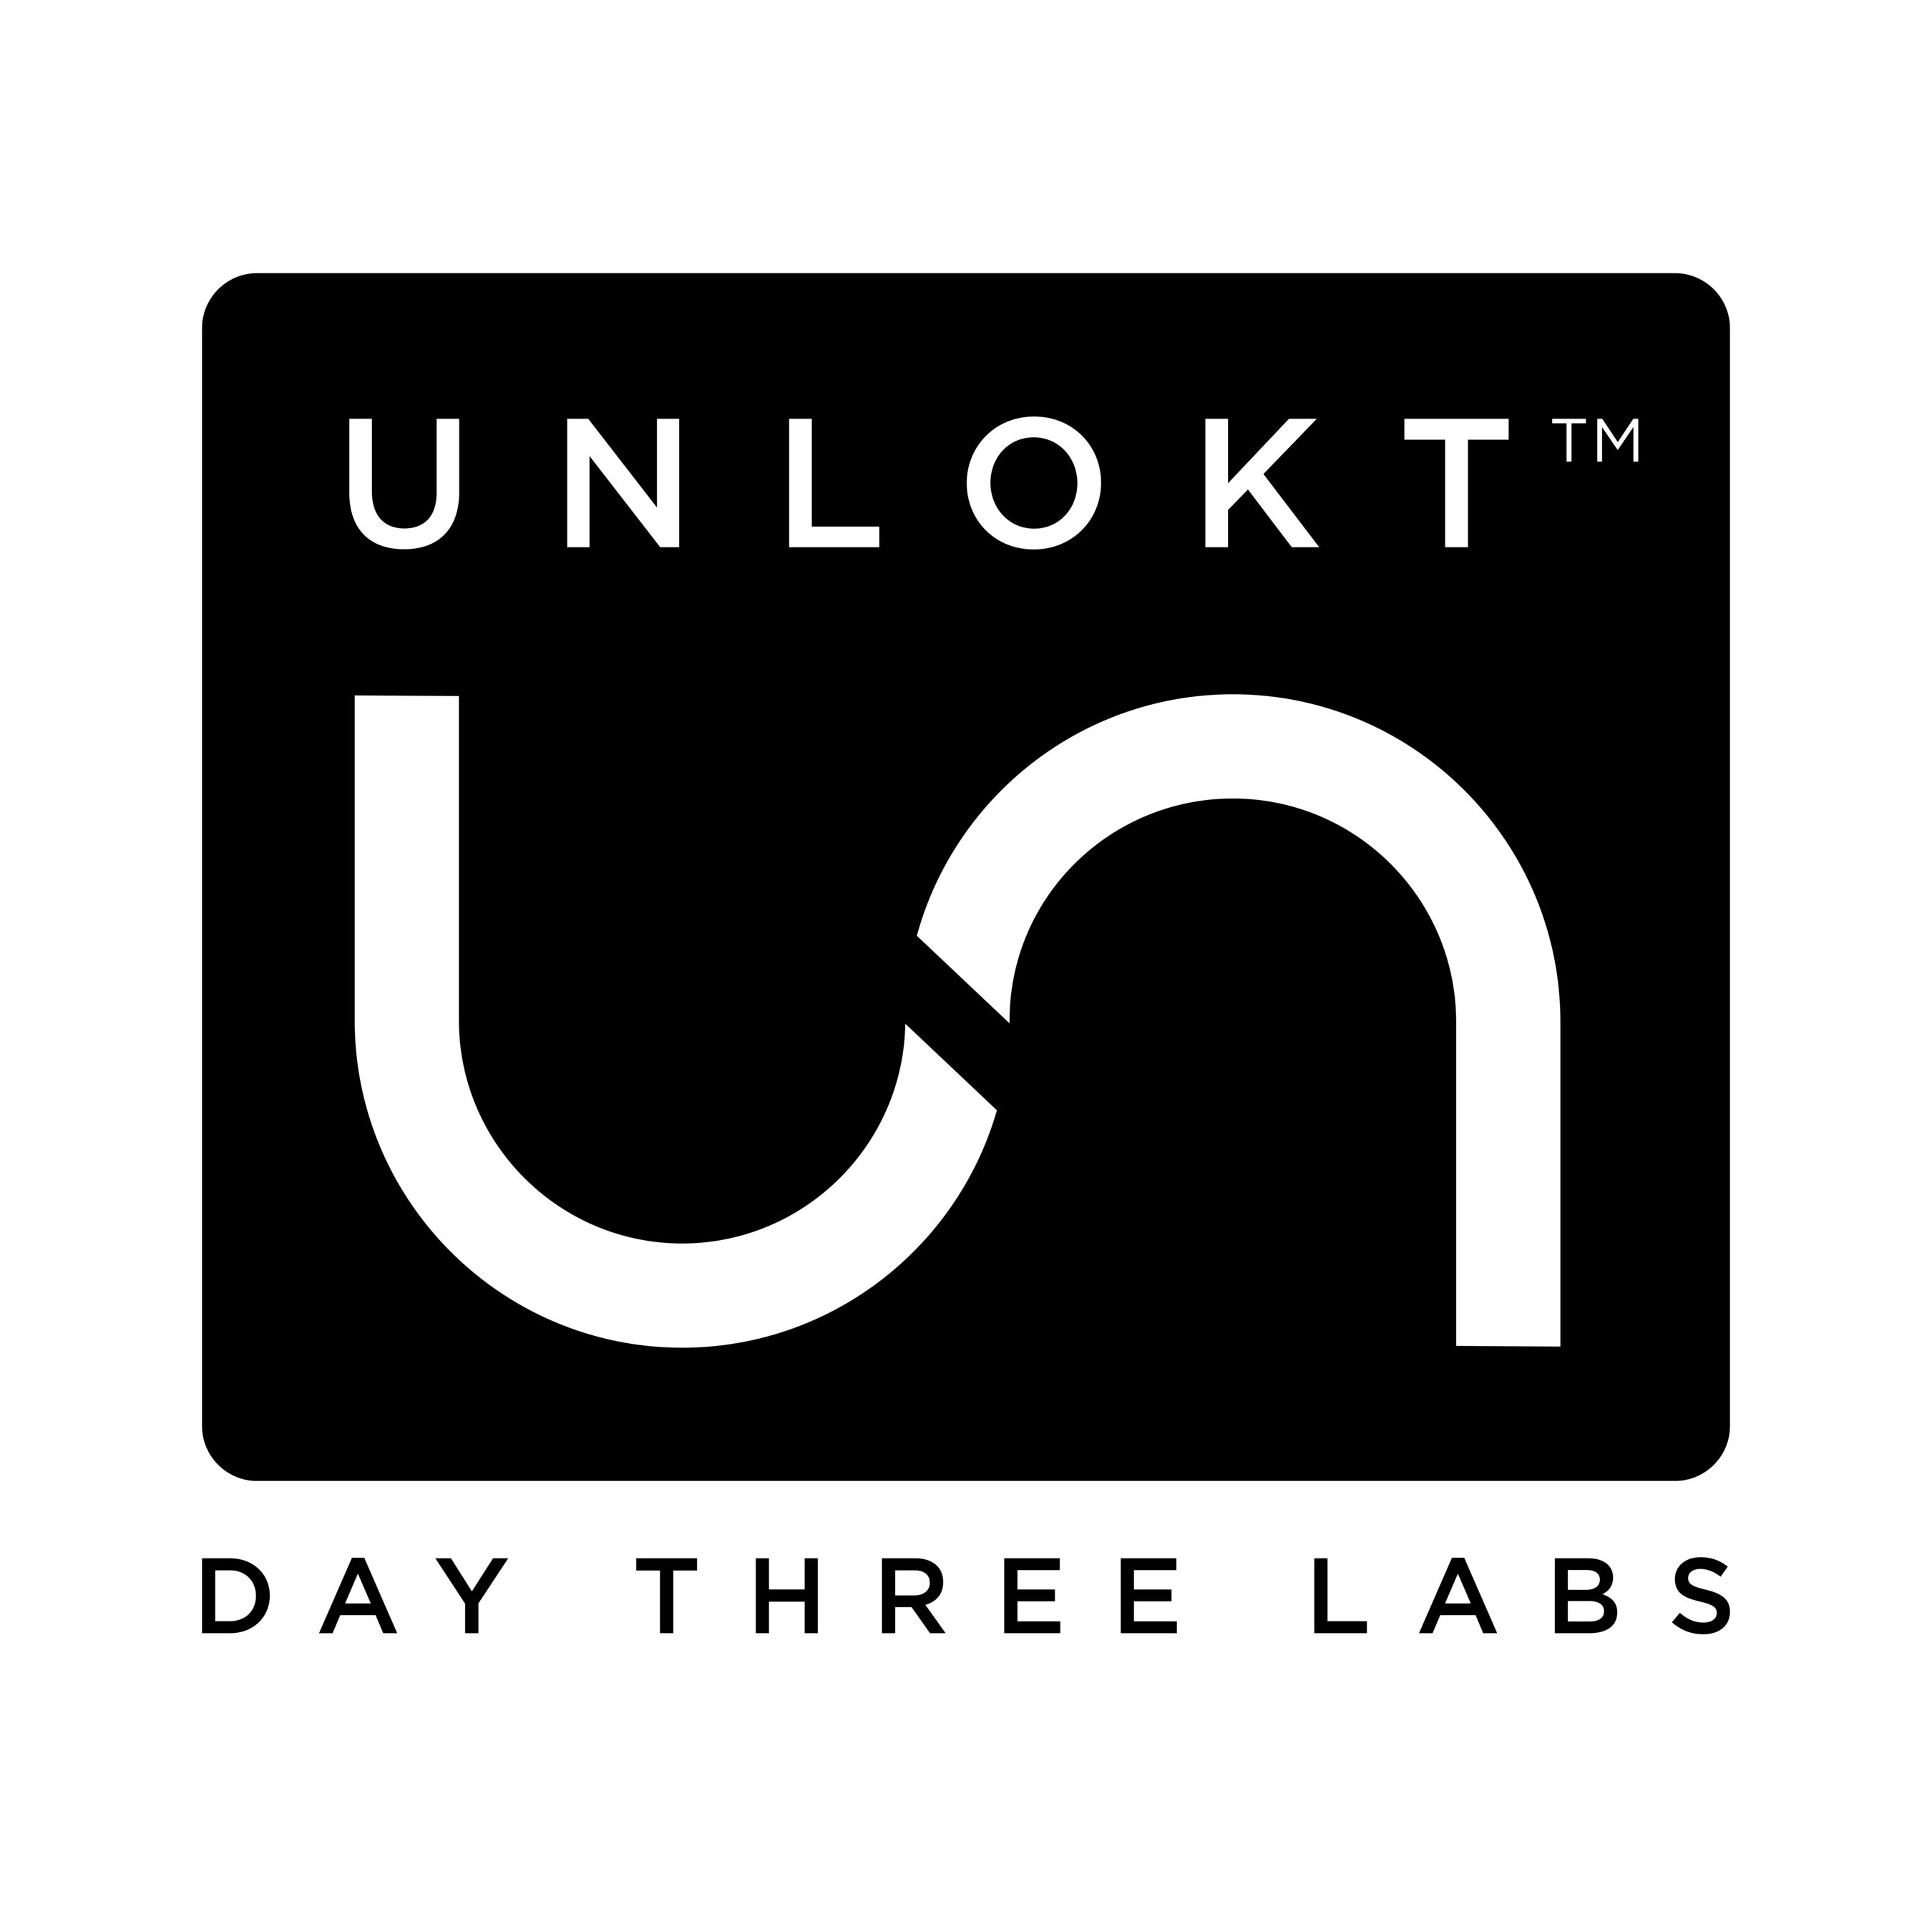 Unlokt™ by Day Three Labs (PRNewsfoto/Day Three Labs)